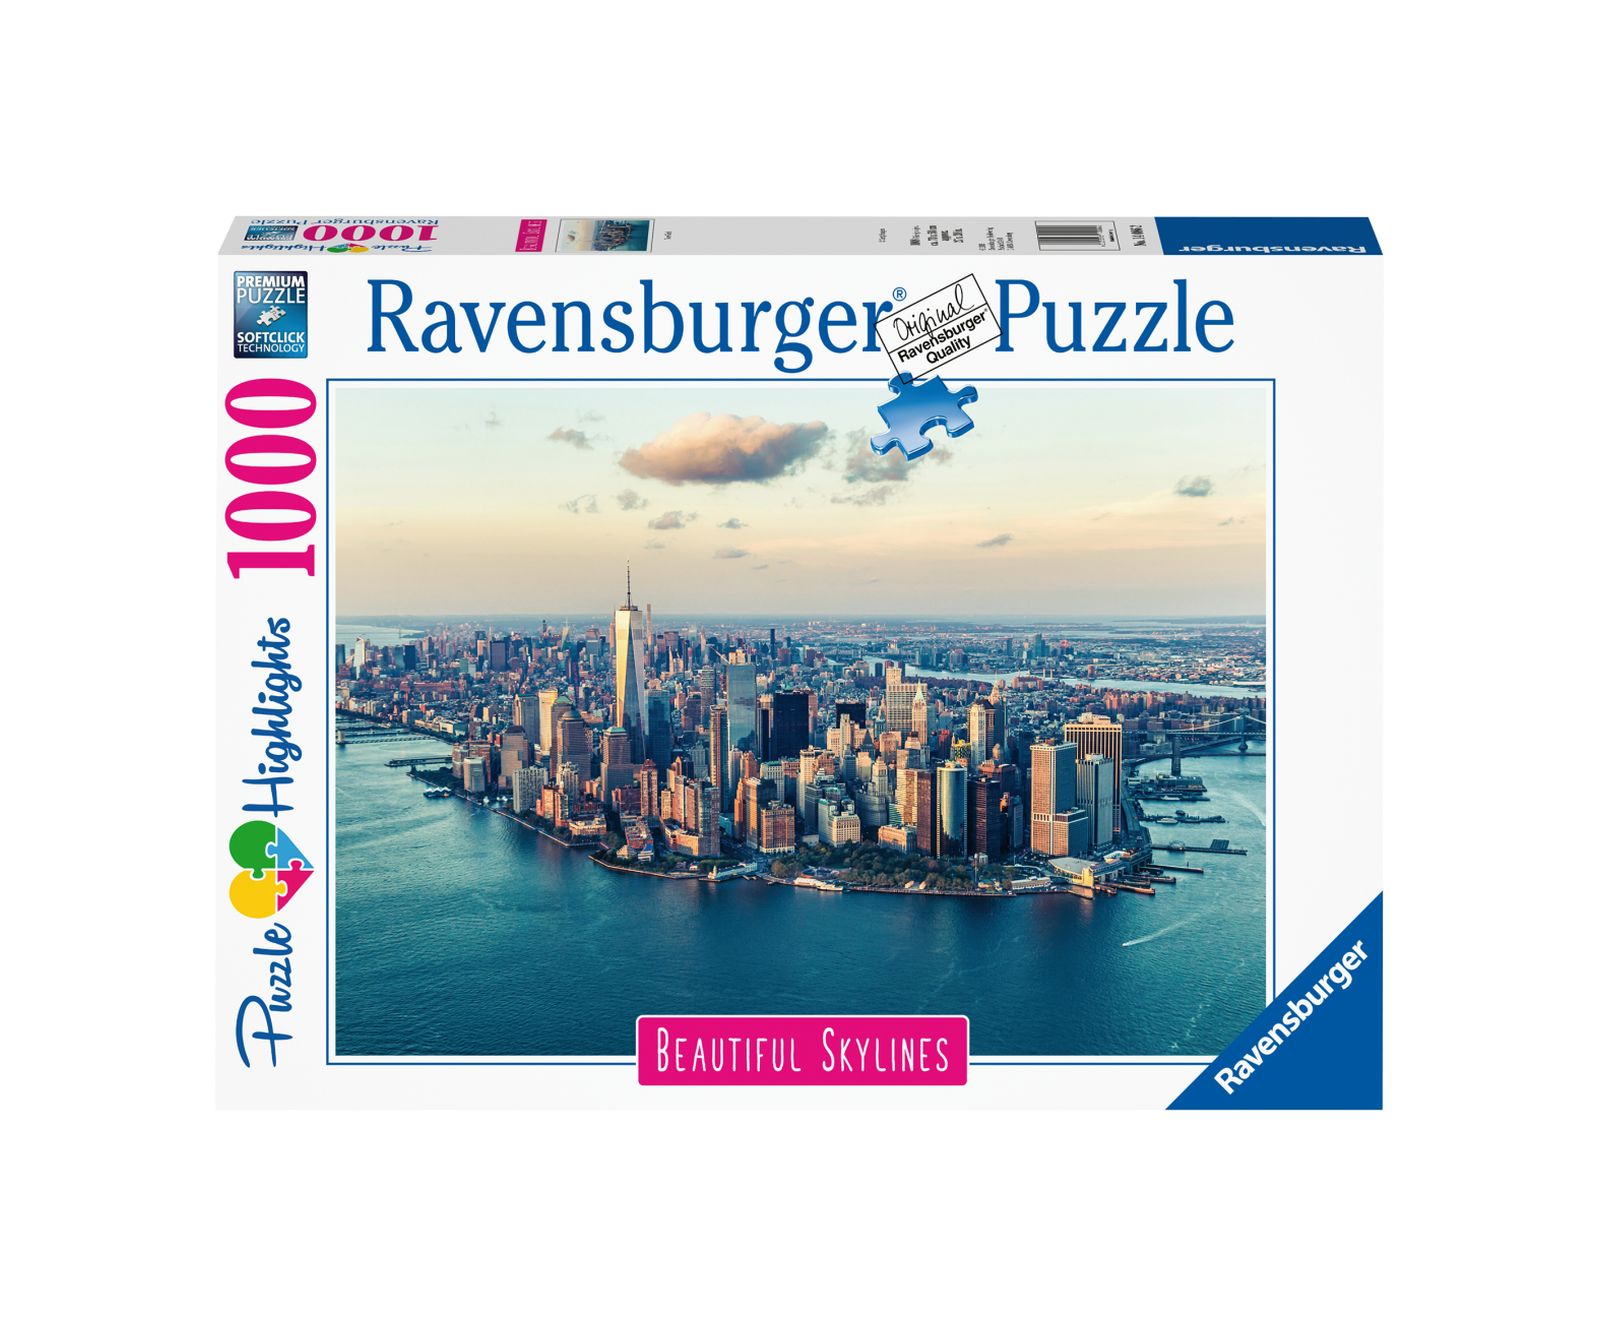 Ravensburger puzzle 1000 pezzi new york - RAVENSBURGER